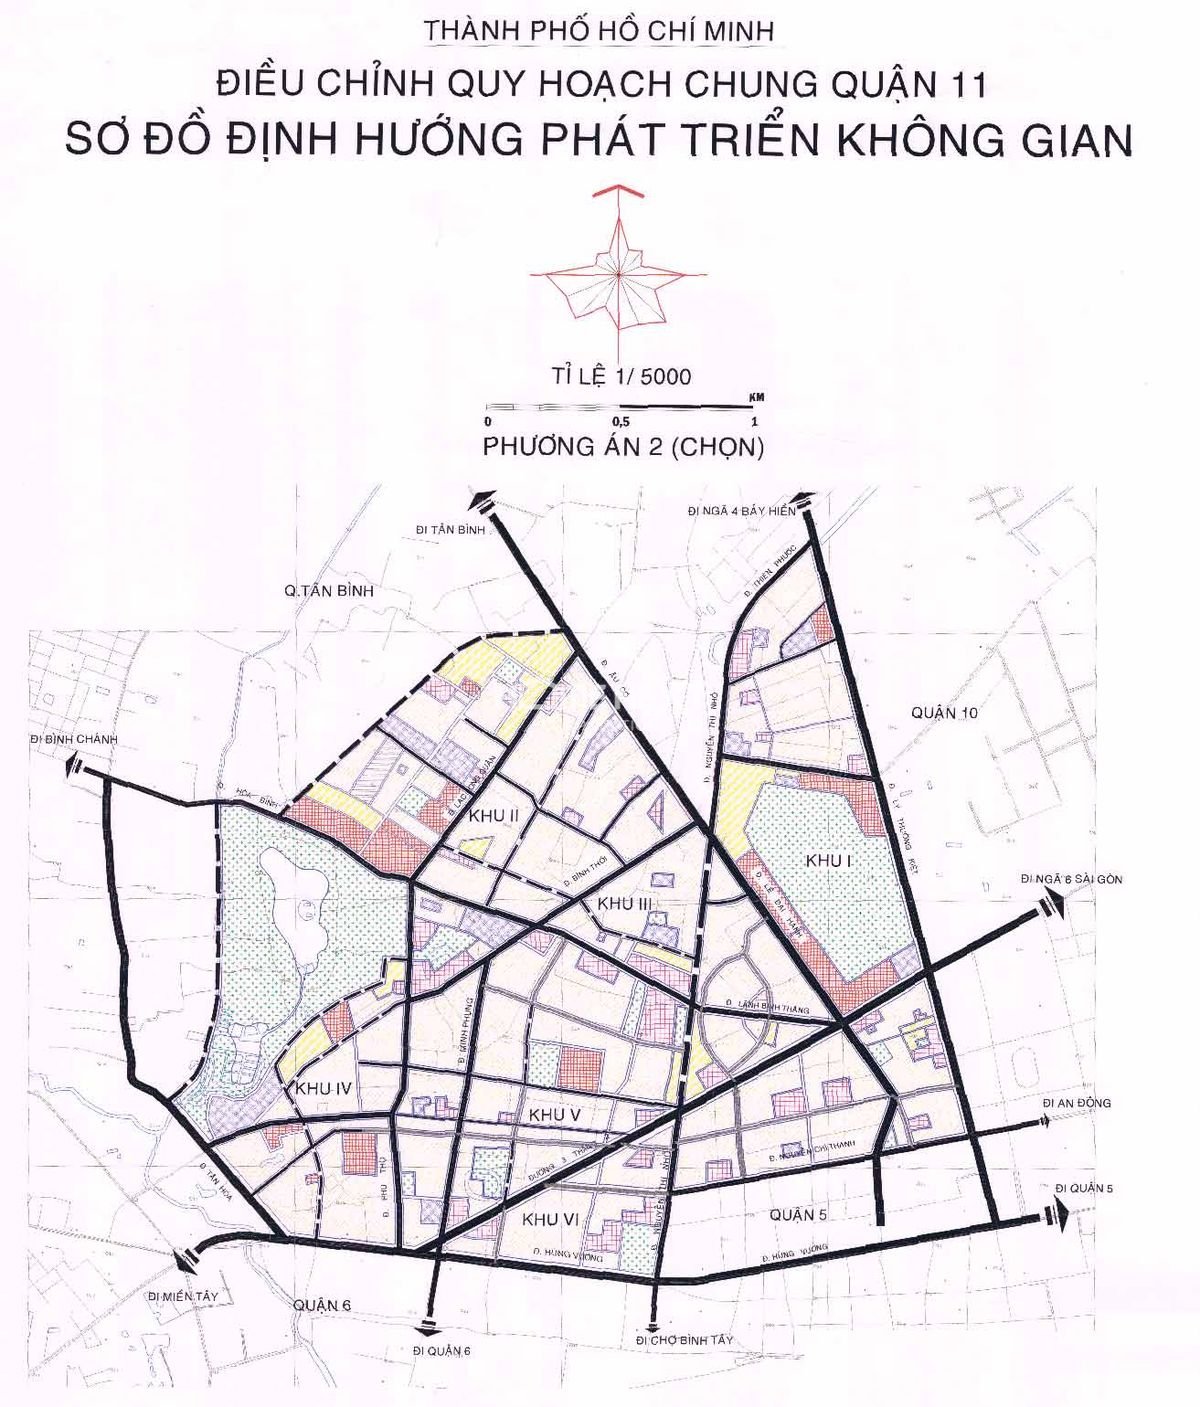 dieu-chinh-quy-hoach-chung-quan-11-den-nam-2020